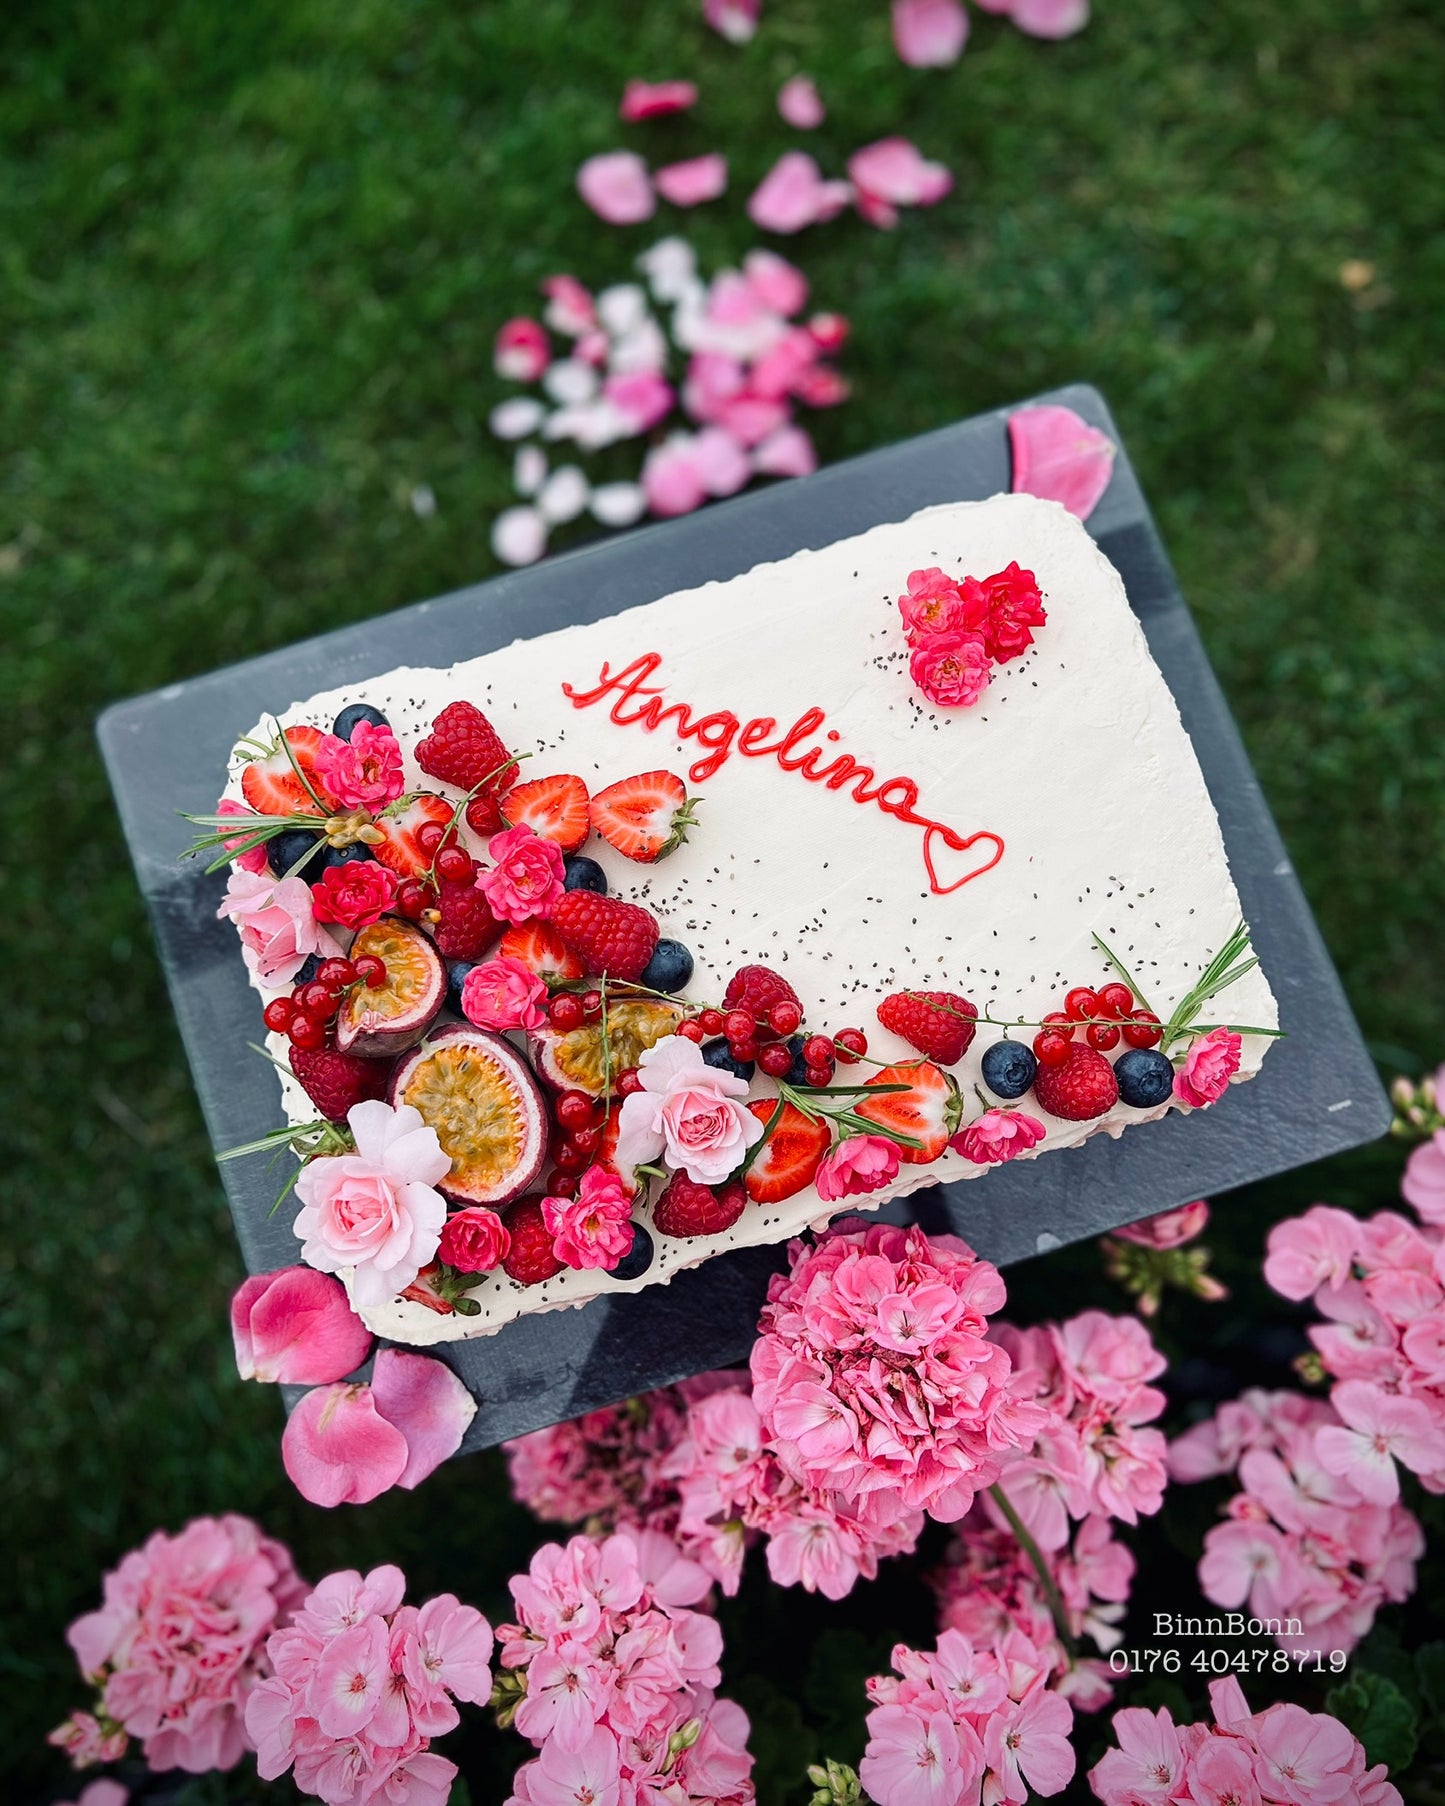 7. Torte "Angel" zum Geburtstag mit bunten frischen Früchten 20x30 cm